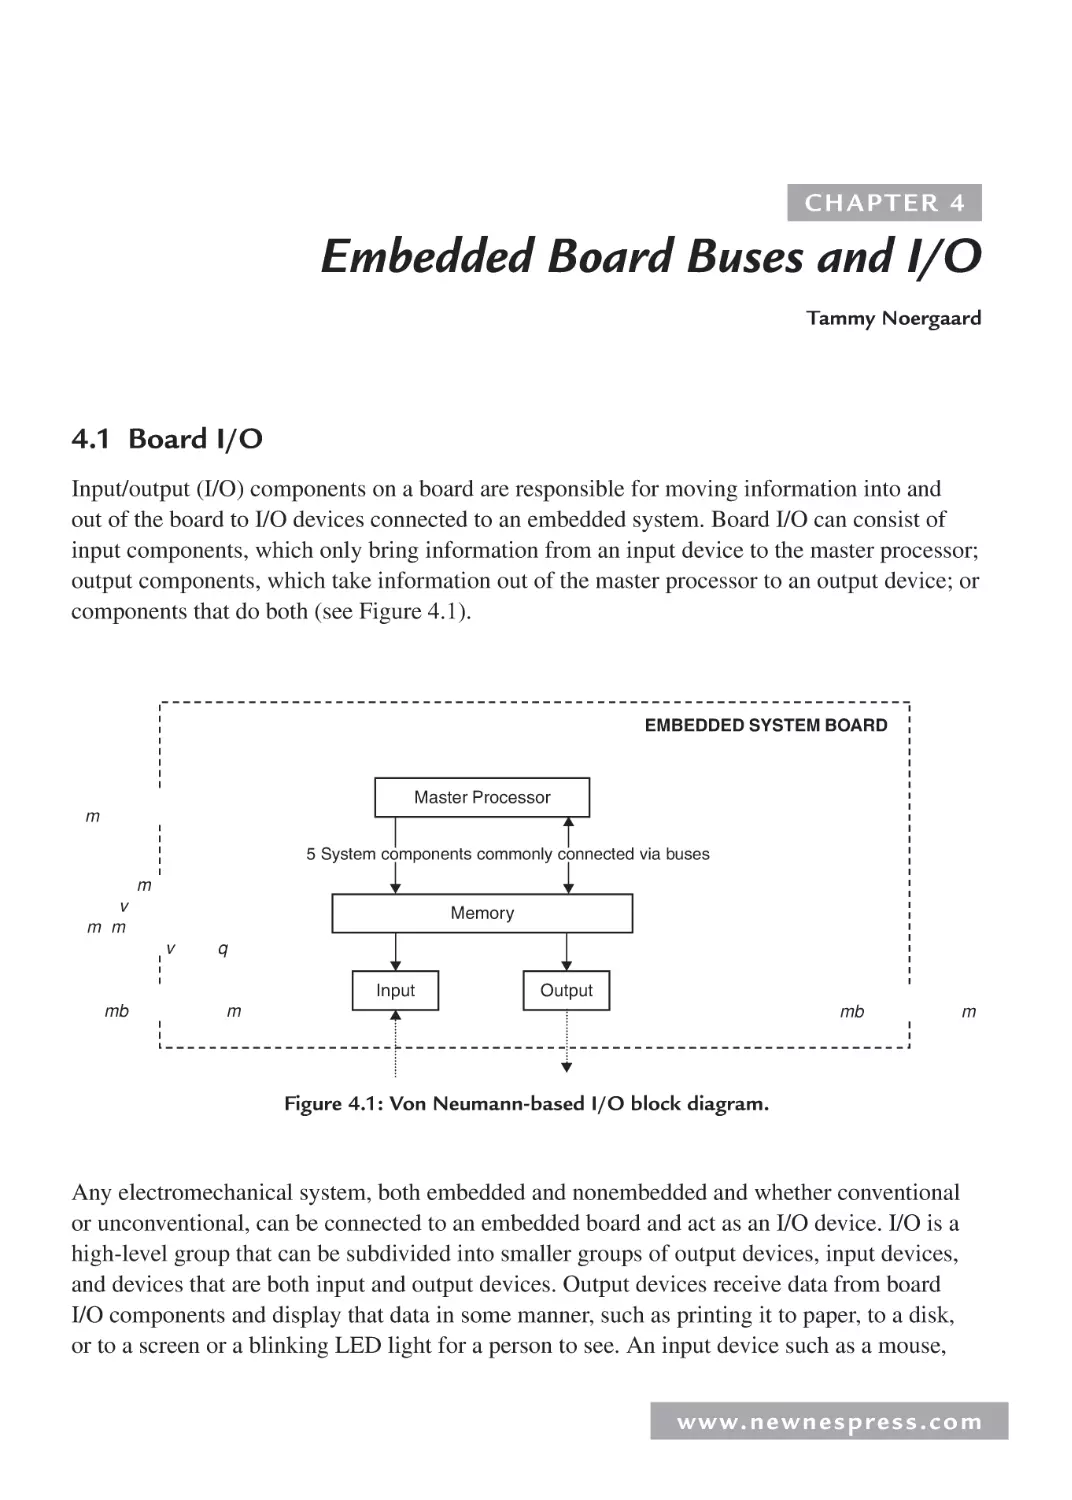 4 Embedded Board Buses and I/O
4.1 Board I/O